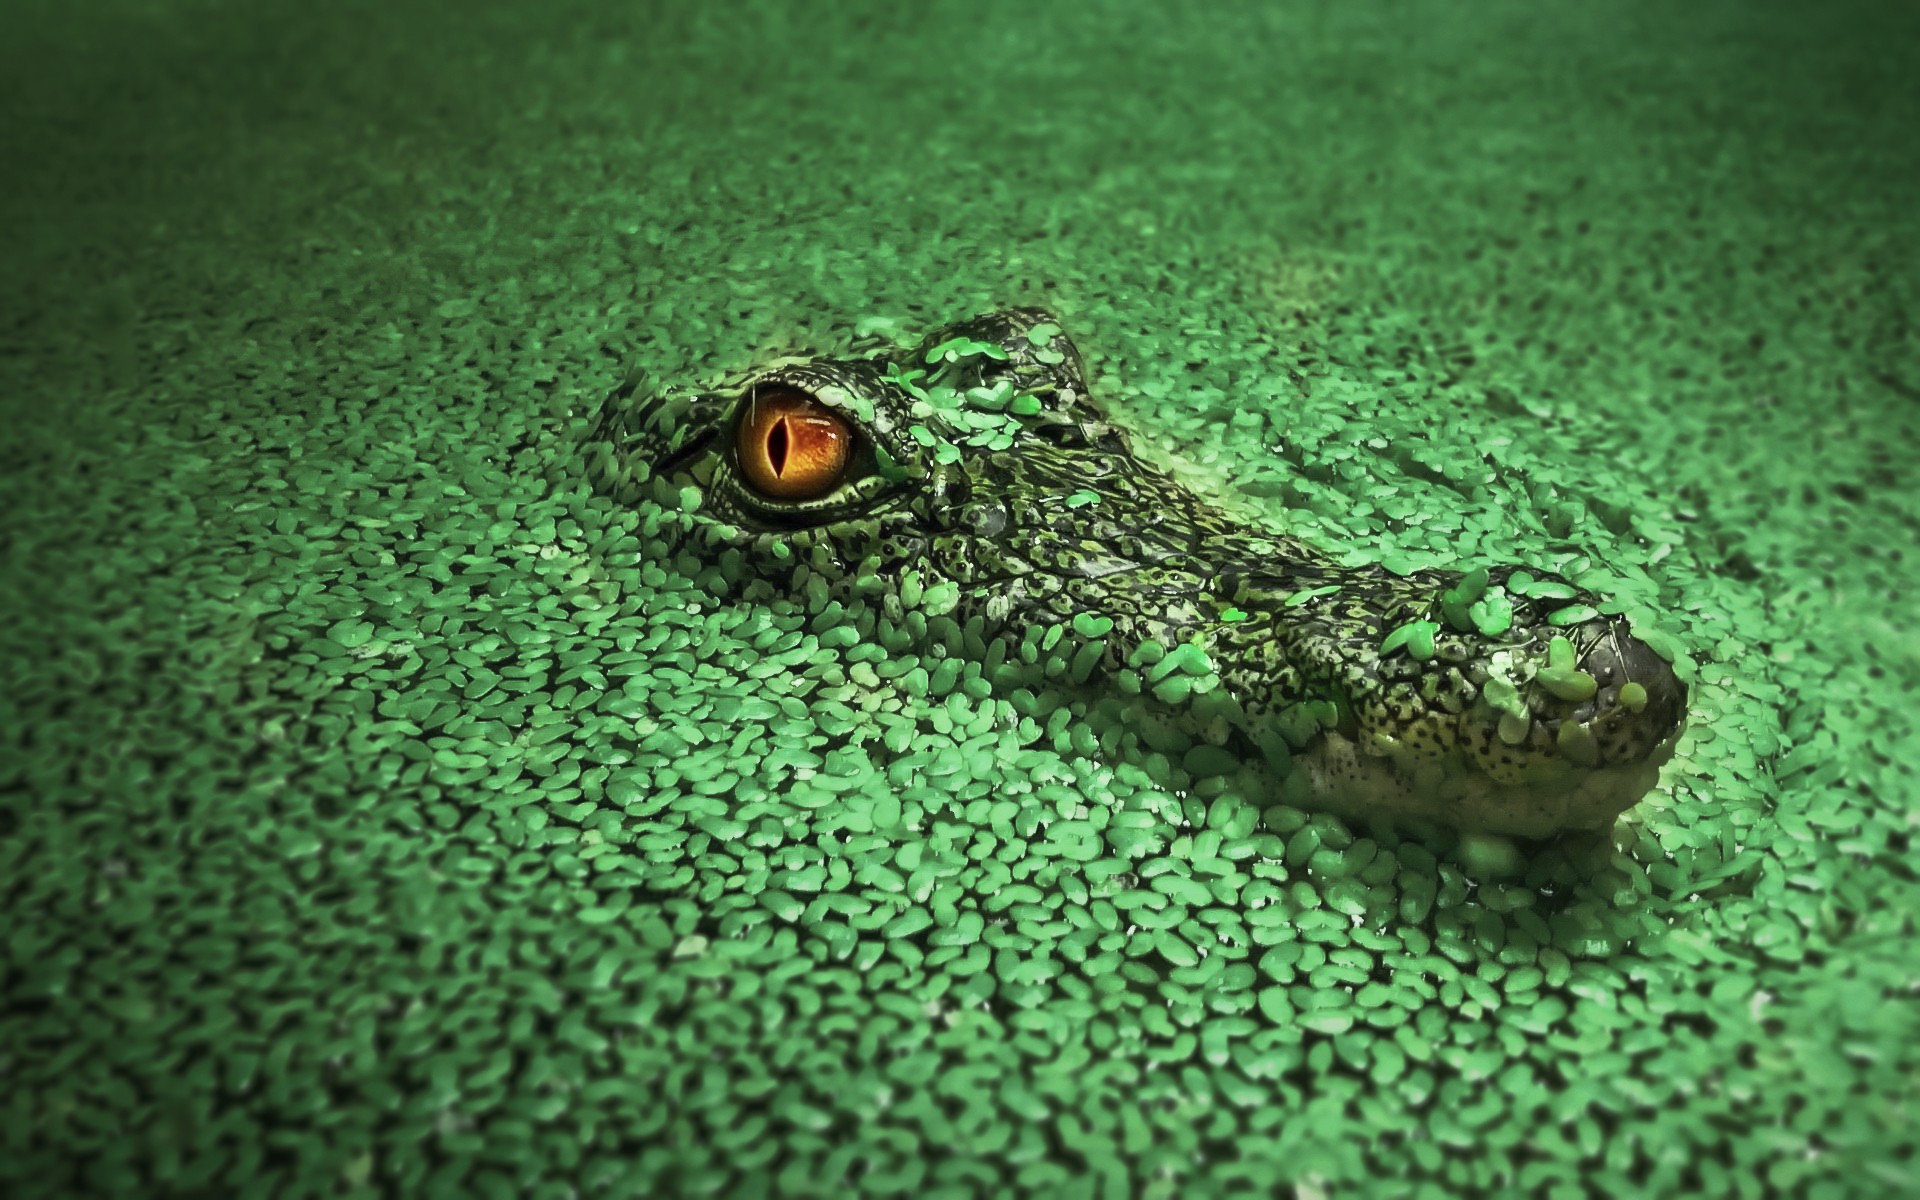 Crocodile PNG images free download, gator PNG, alligator | Pngimg.com